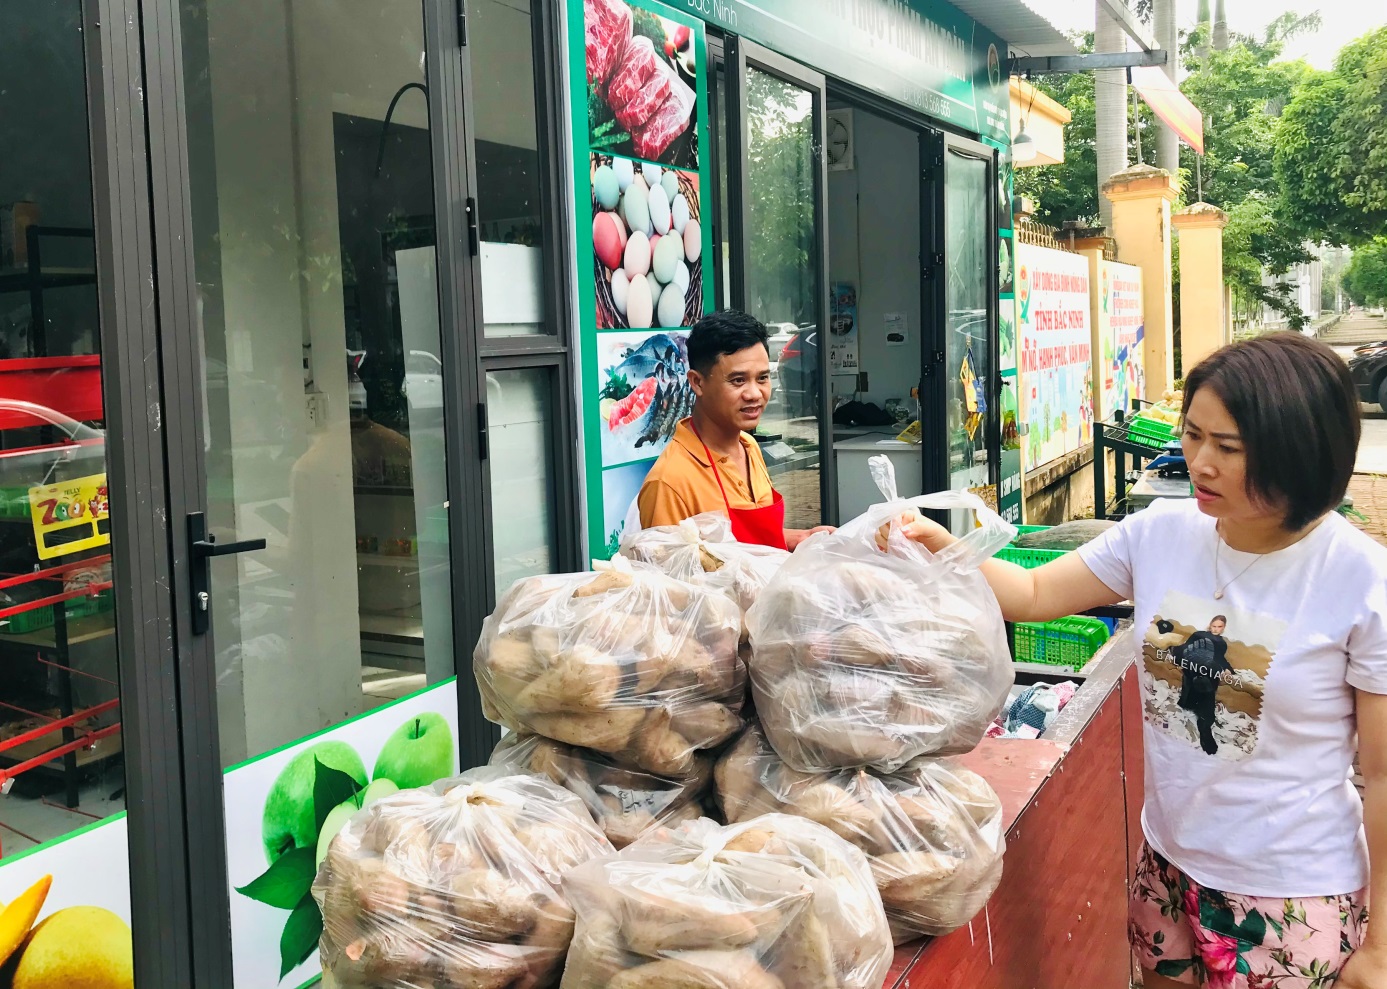 Bằng cách này chỉ trong thời gian ngắn, Hội Nông dân Bắc Ninh đã bán hết veo 87 tấn khoai lang cho nông dân- Ảnh 3.